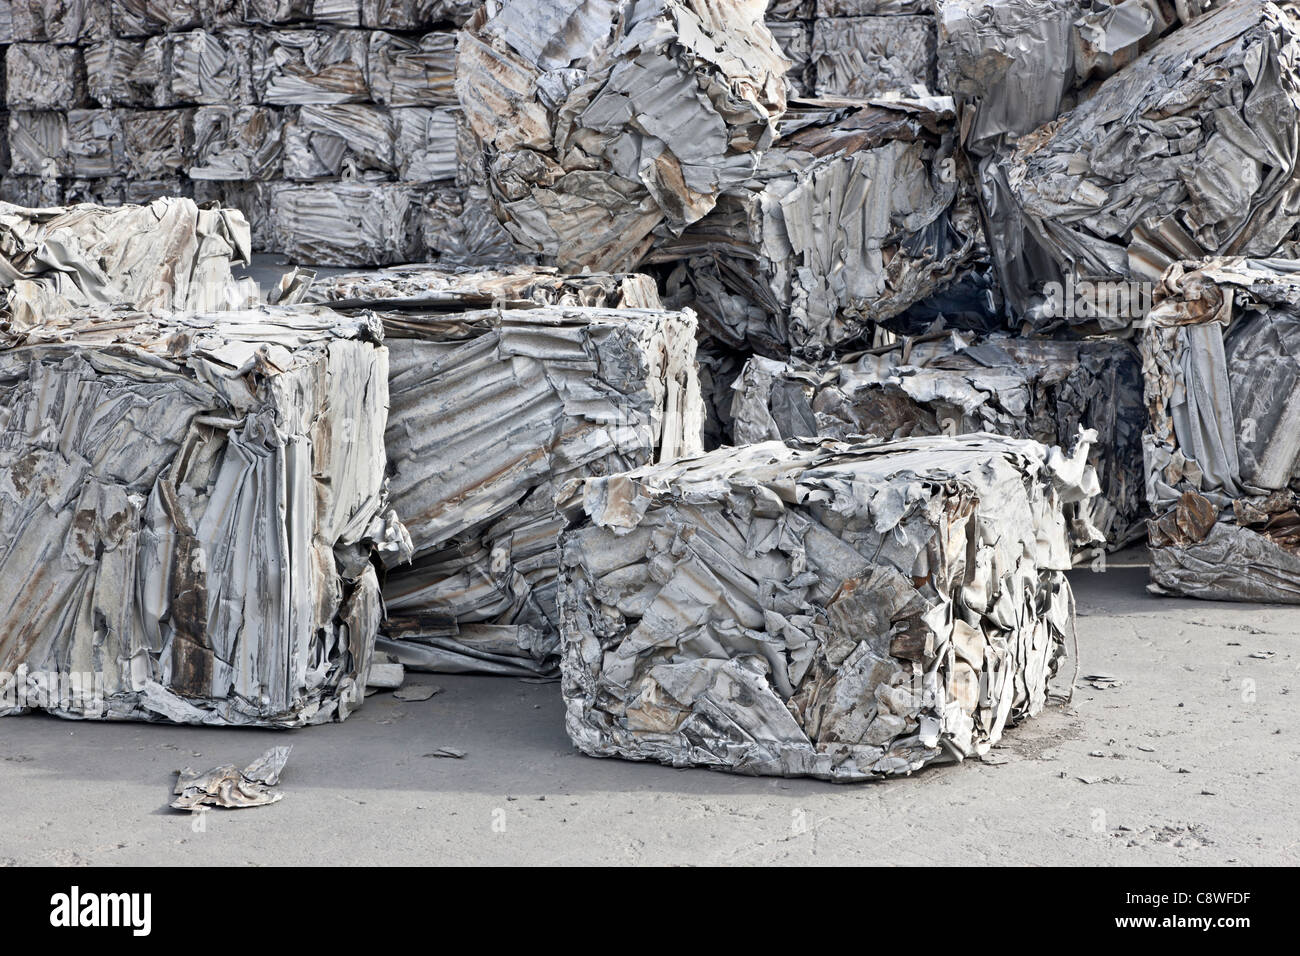 Le recyclage de l'aluminium, bâches compactés Banque D'Images